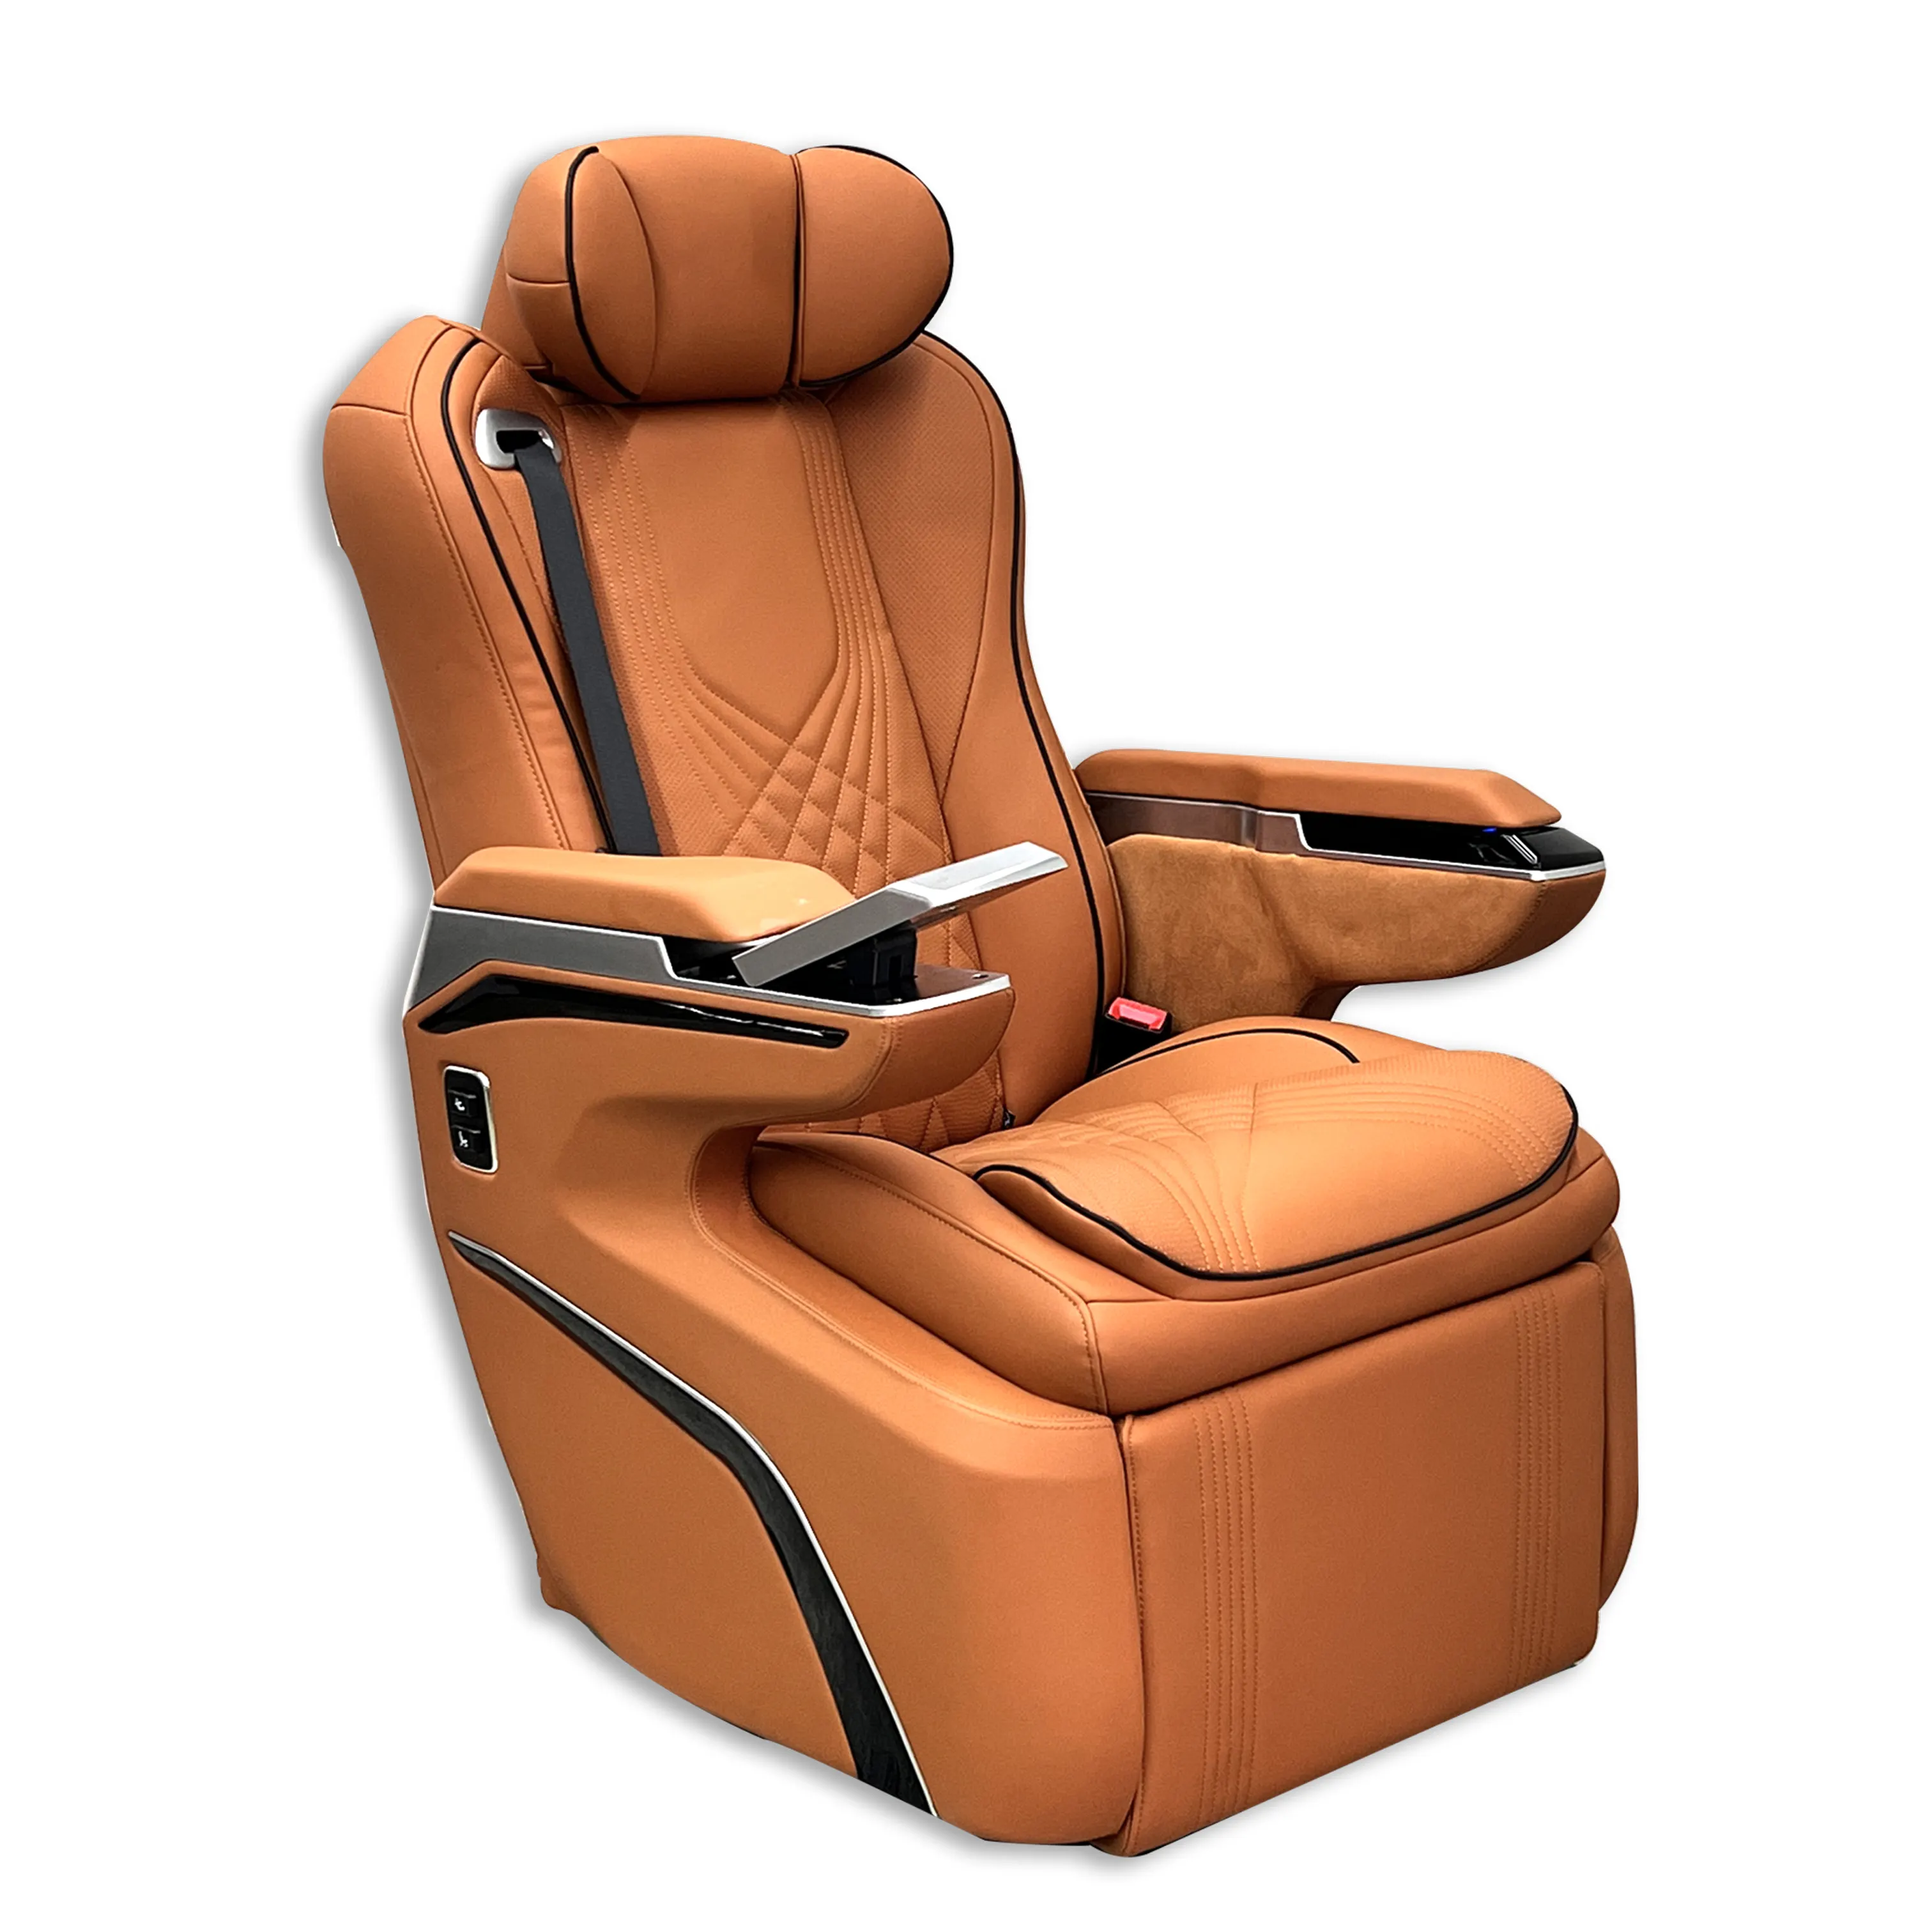 लक्जरी एयरलाइन ऑटो वैन कार सीट एयर मसाज रिक्लियर सीट के साथ मल्टीटन कैरवेल के लिए लक्जरी चमड़े की कार सीट